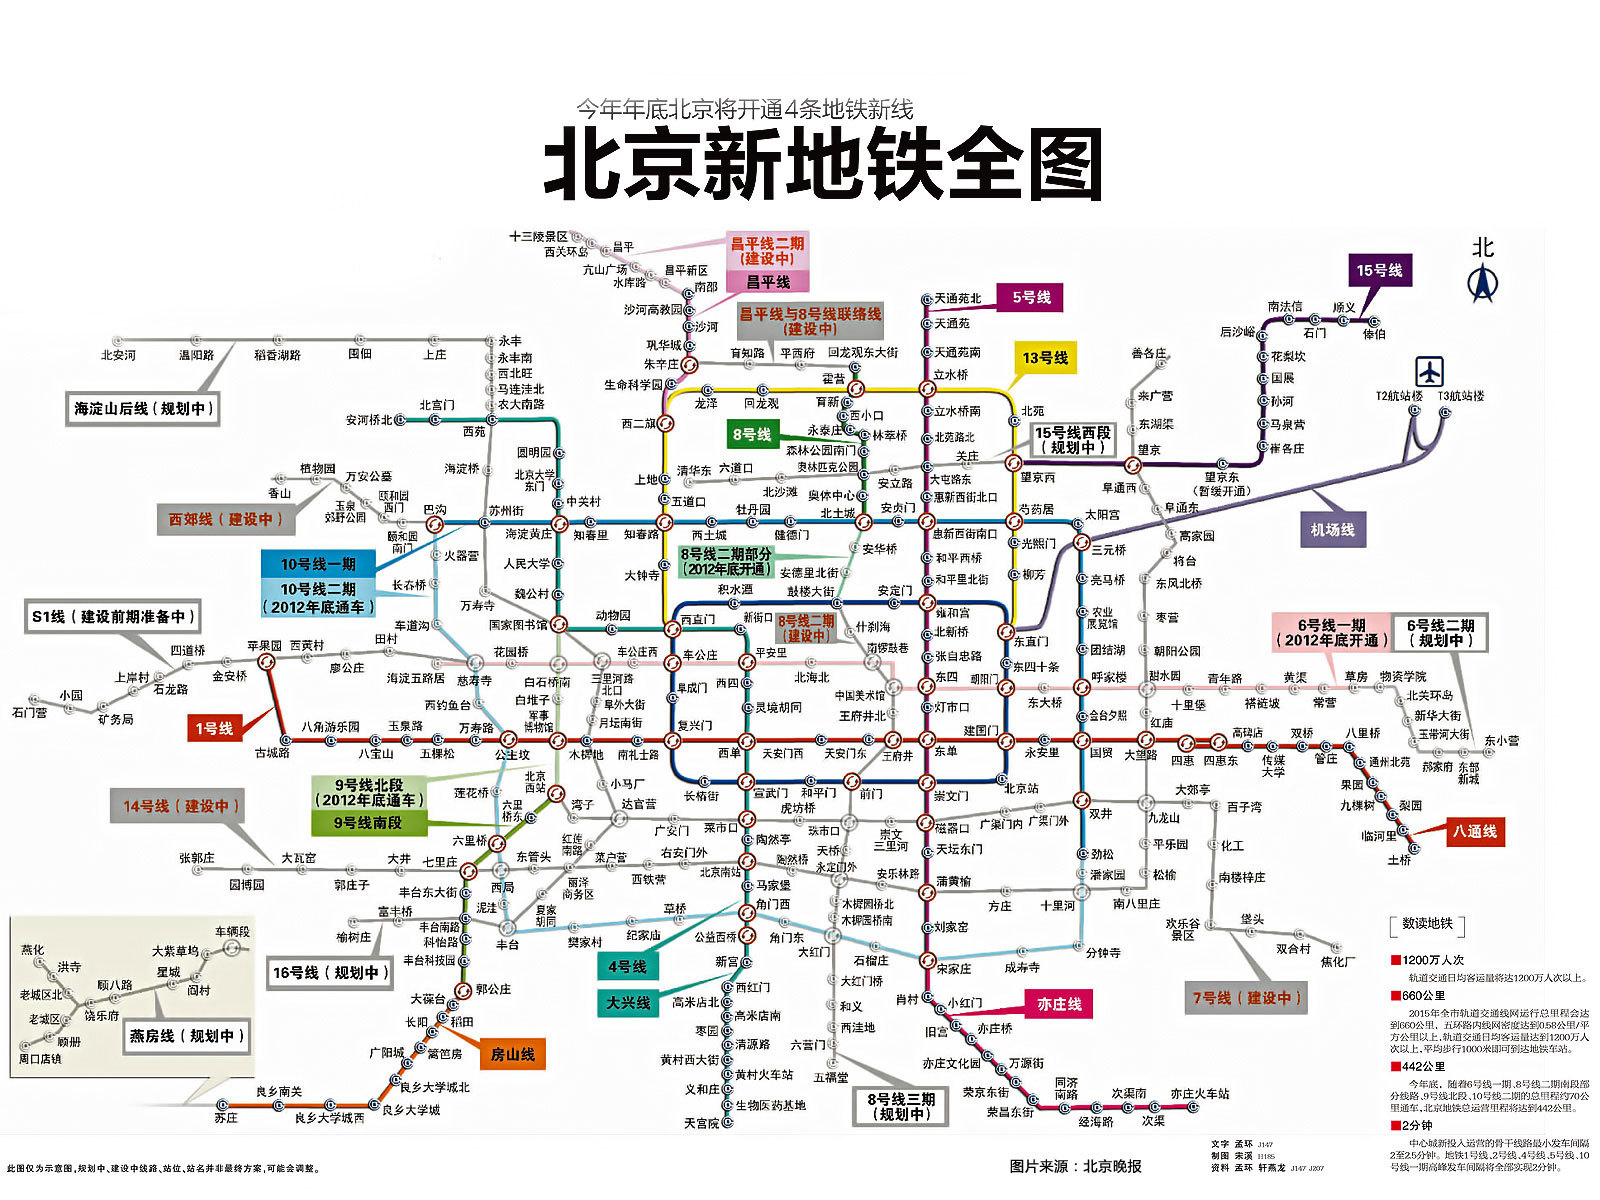 最新的北京2012年地铁规划图_2003年-2012年北京地铁规划-CSDN博客